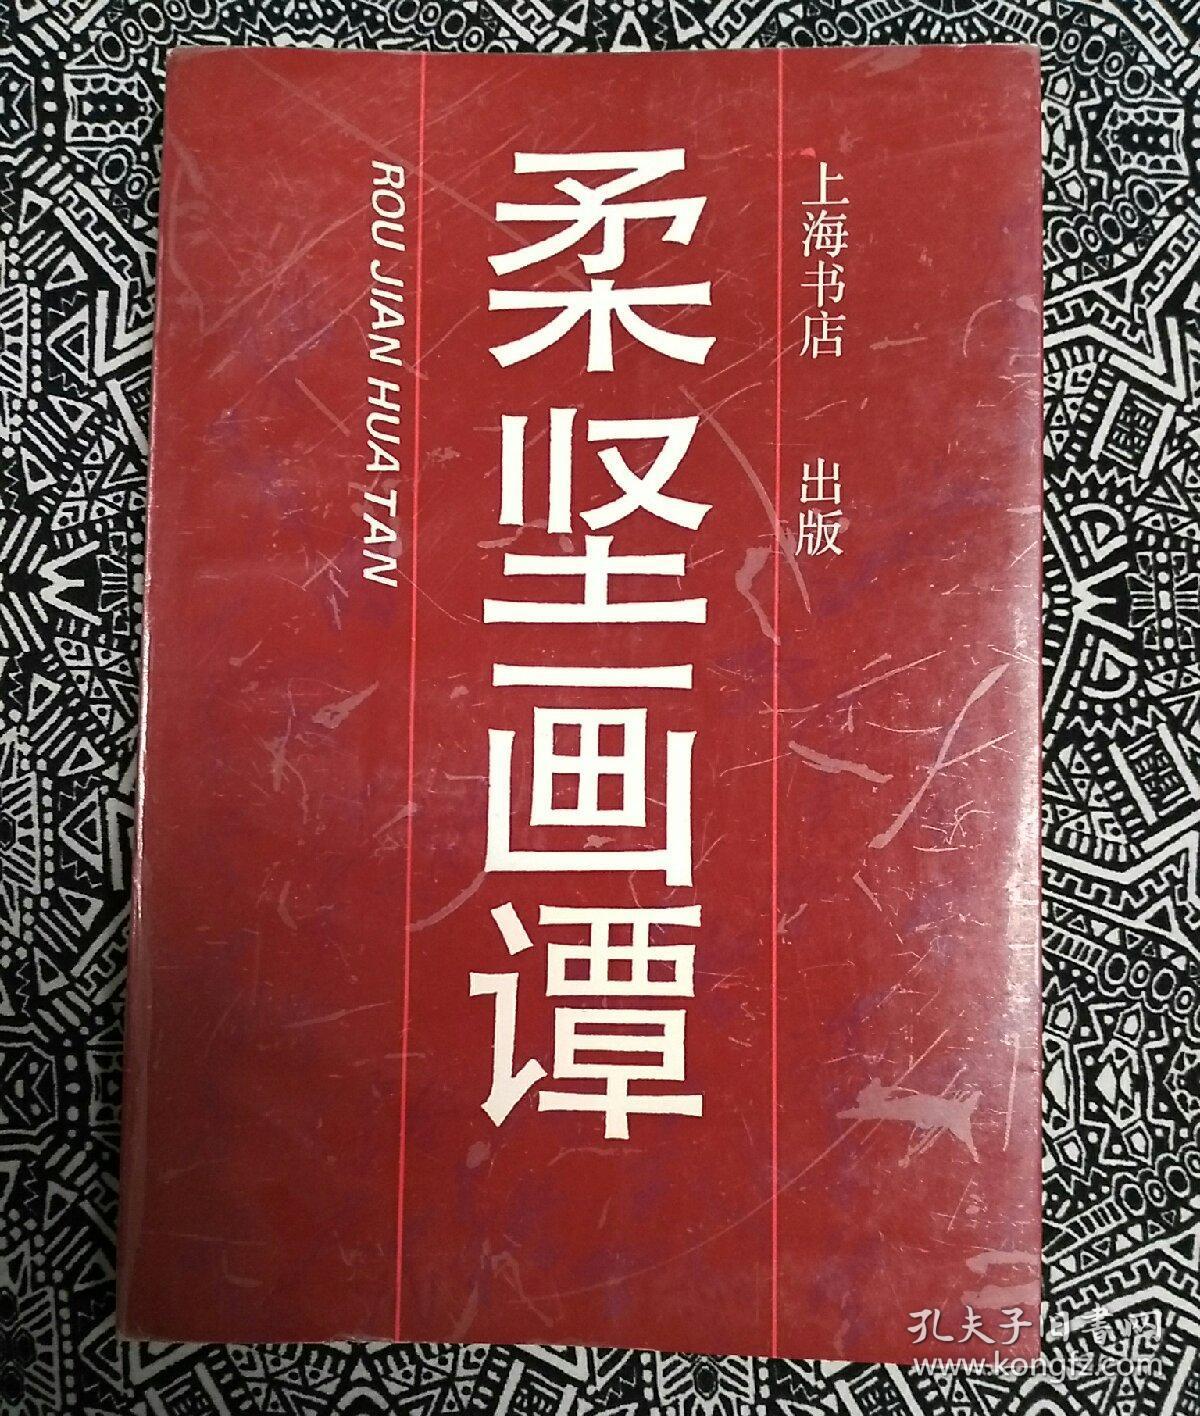 《柔坚画谭》沈柔坚著，上海书店1990年10月初版，印数2000册，32开225页软精装。